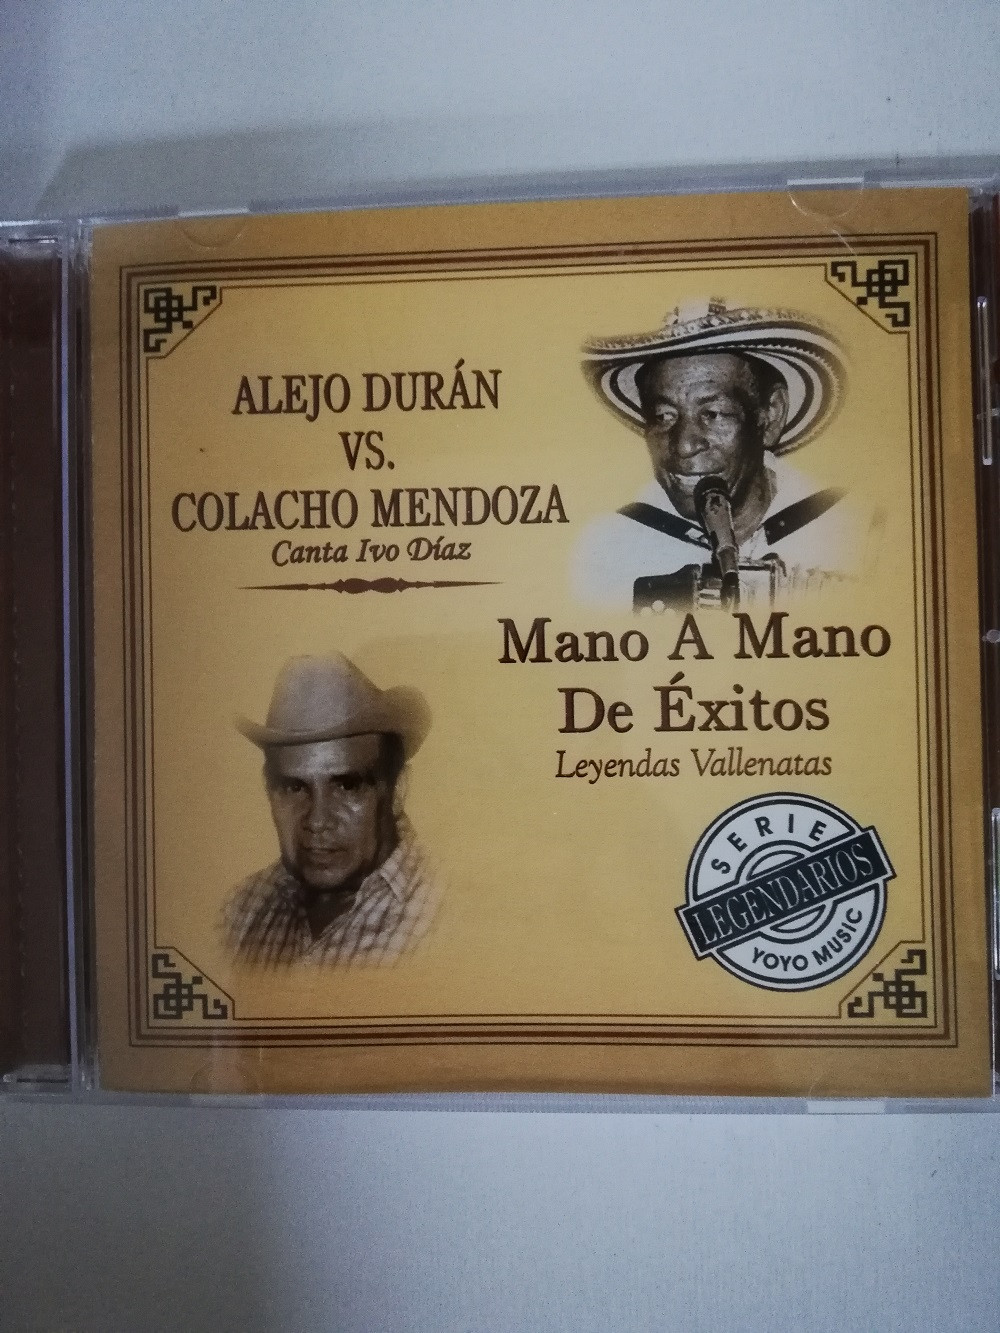 Imagen CD ALEJO DURÁN VS. COLACHO MENDOZA - MANO A MANO DE EXITOS